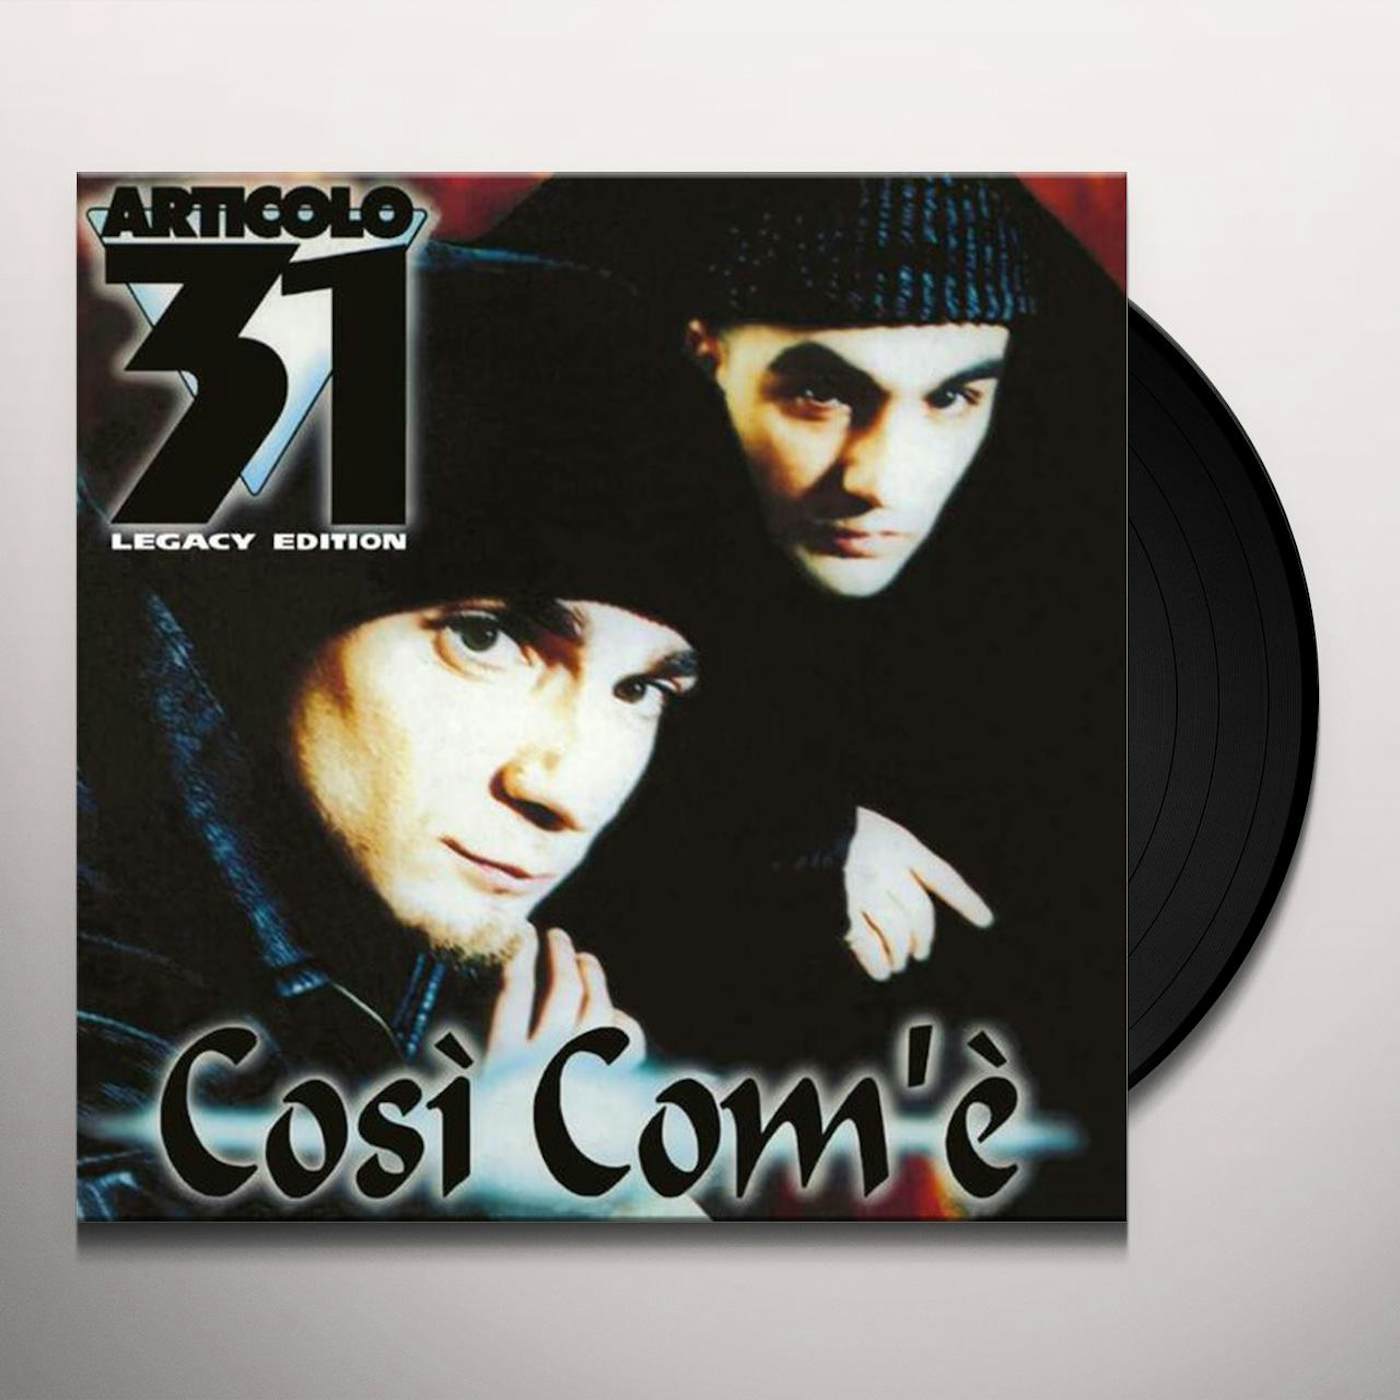 Articolo 31 COSI COM E Vinyl Record